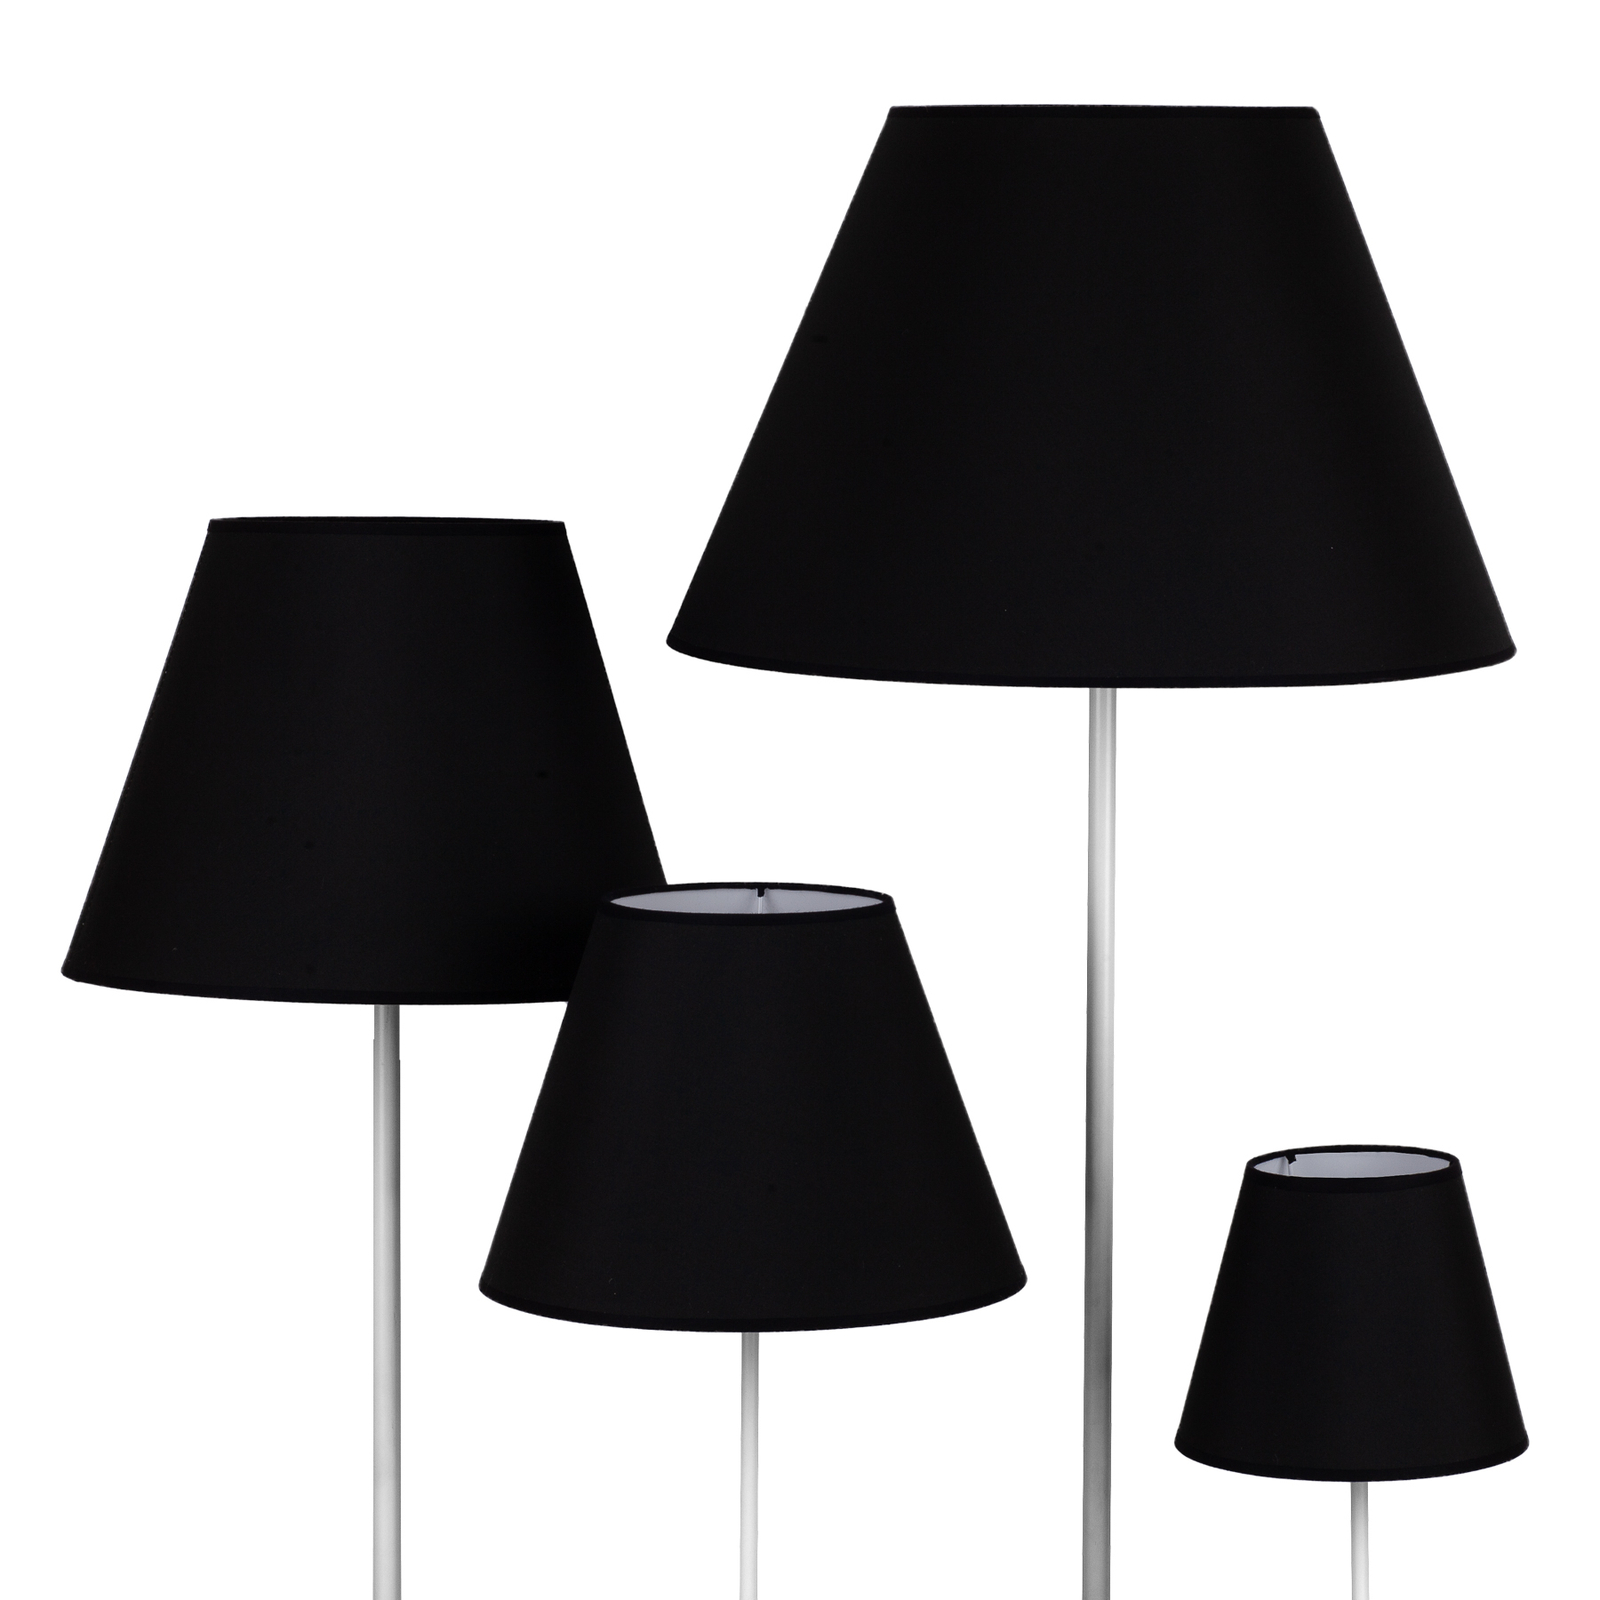 Lampeskjerm Sofia høyde 31 cm, svart/hvit